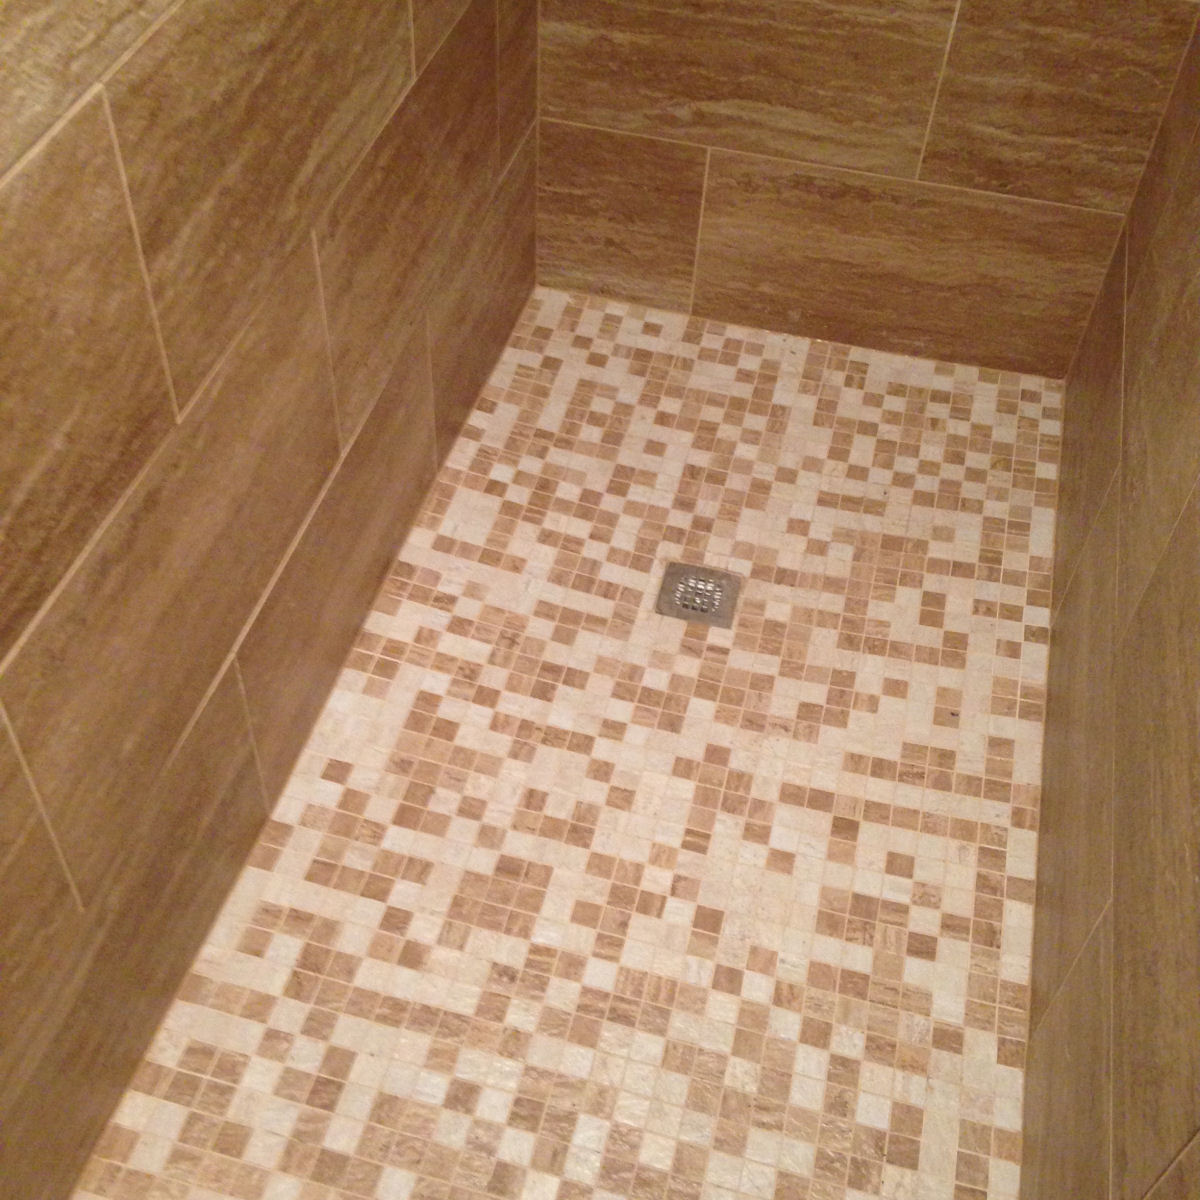 Shower Tiled Floor